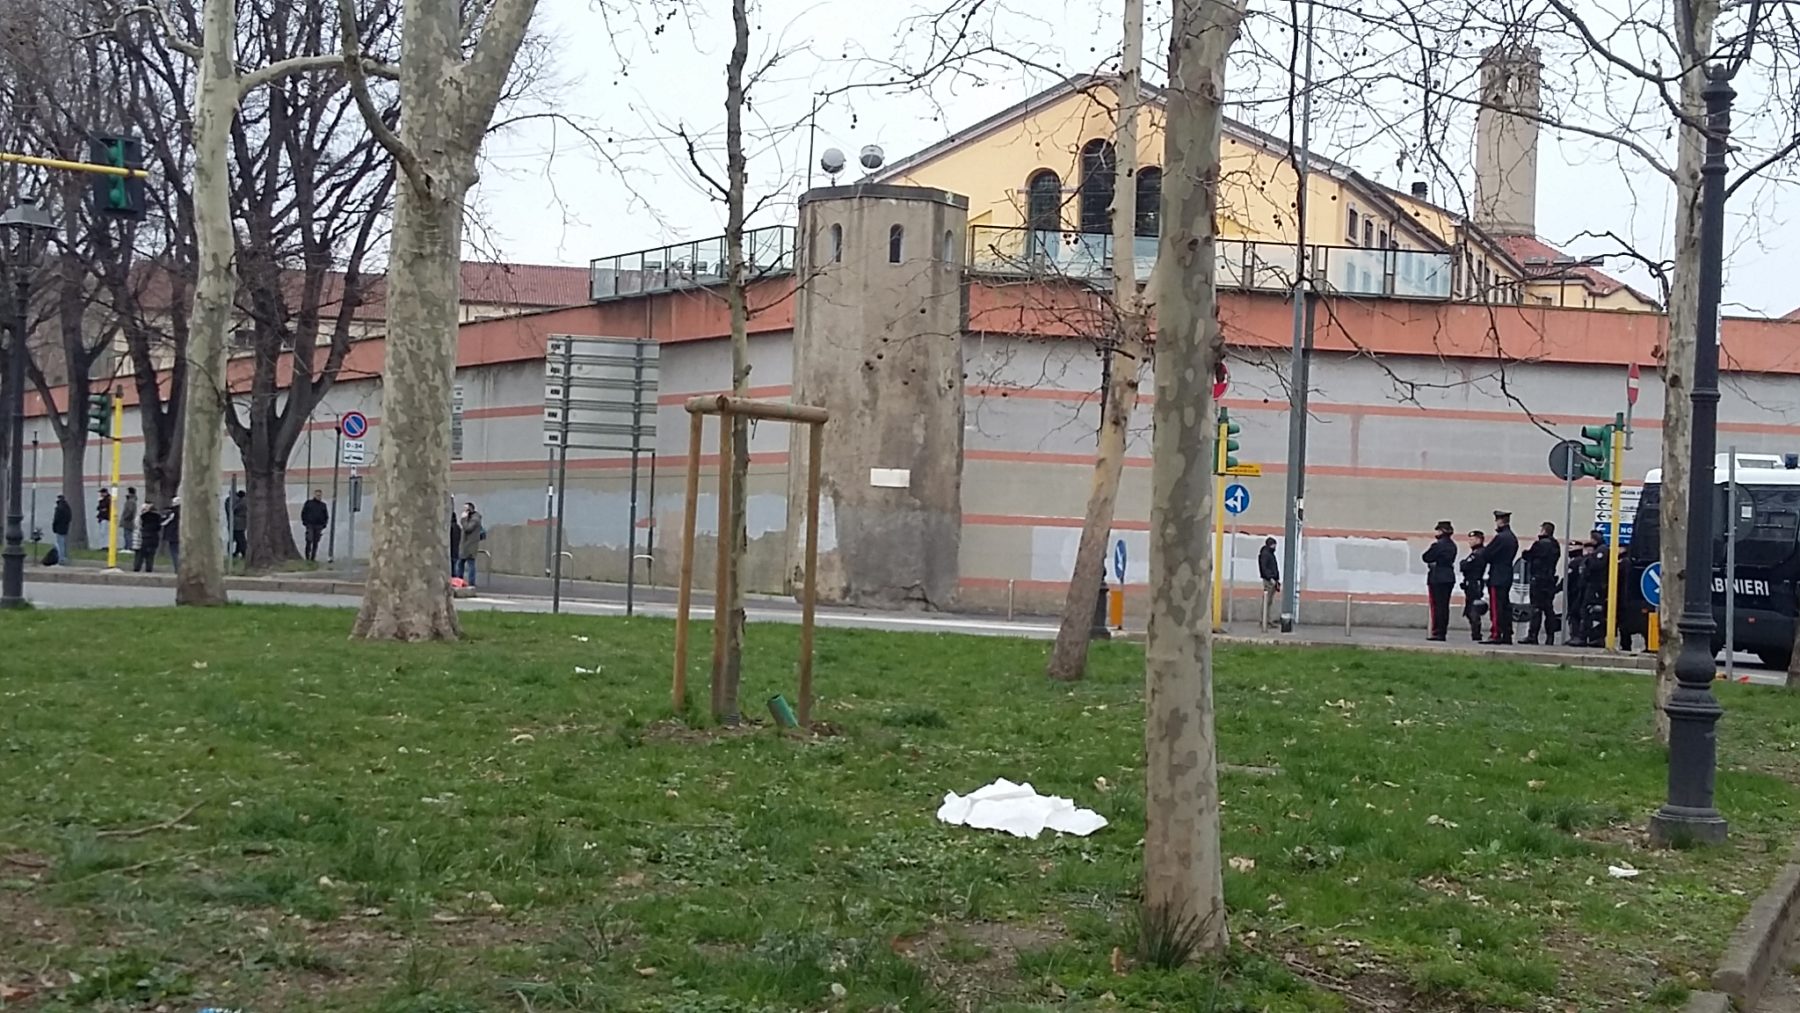 carcere,san vittore. La rivolta al carcere di San Vittore e i centri sociali - 09/03/2020